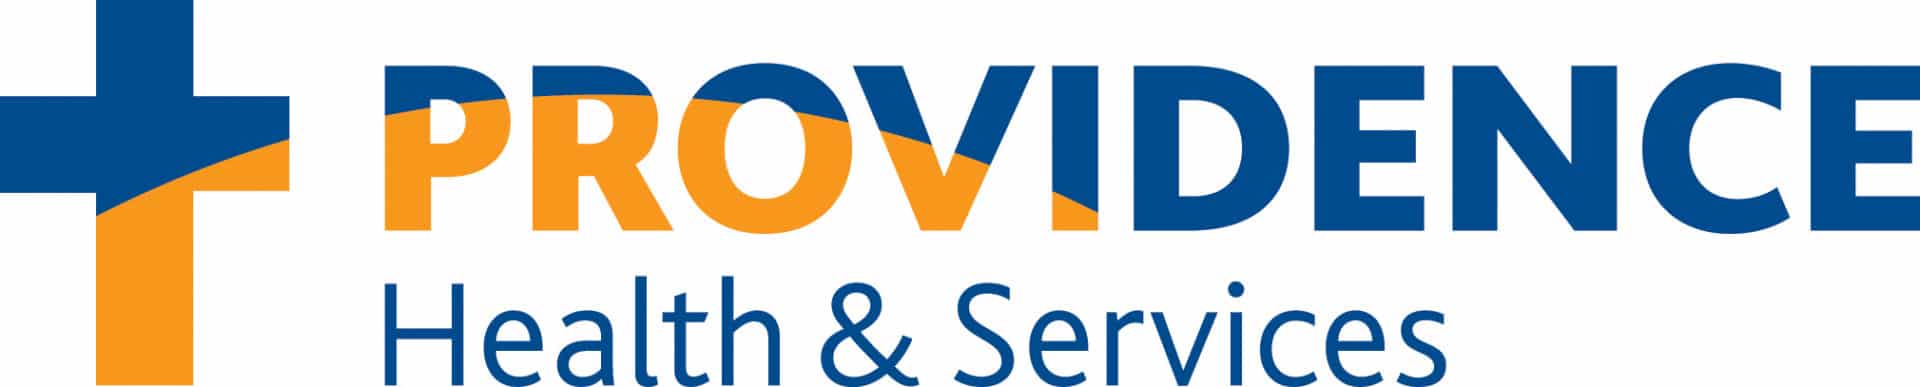 Providence Logo - Providence Health & Services Logo